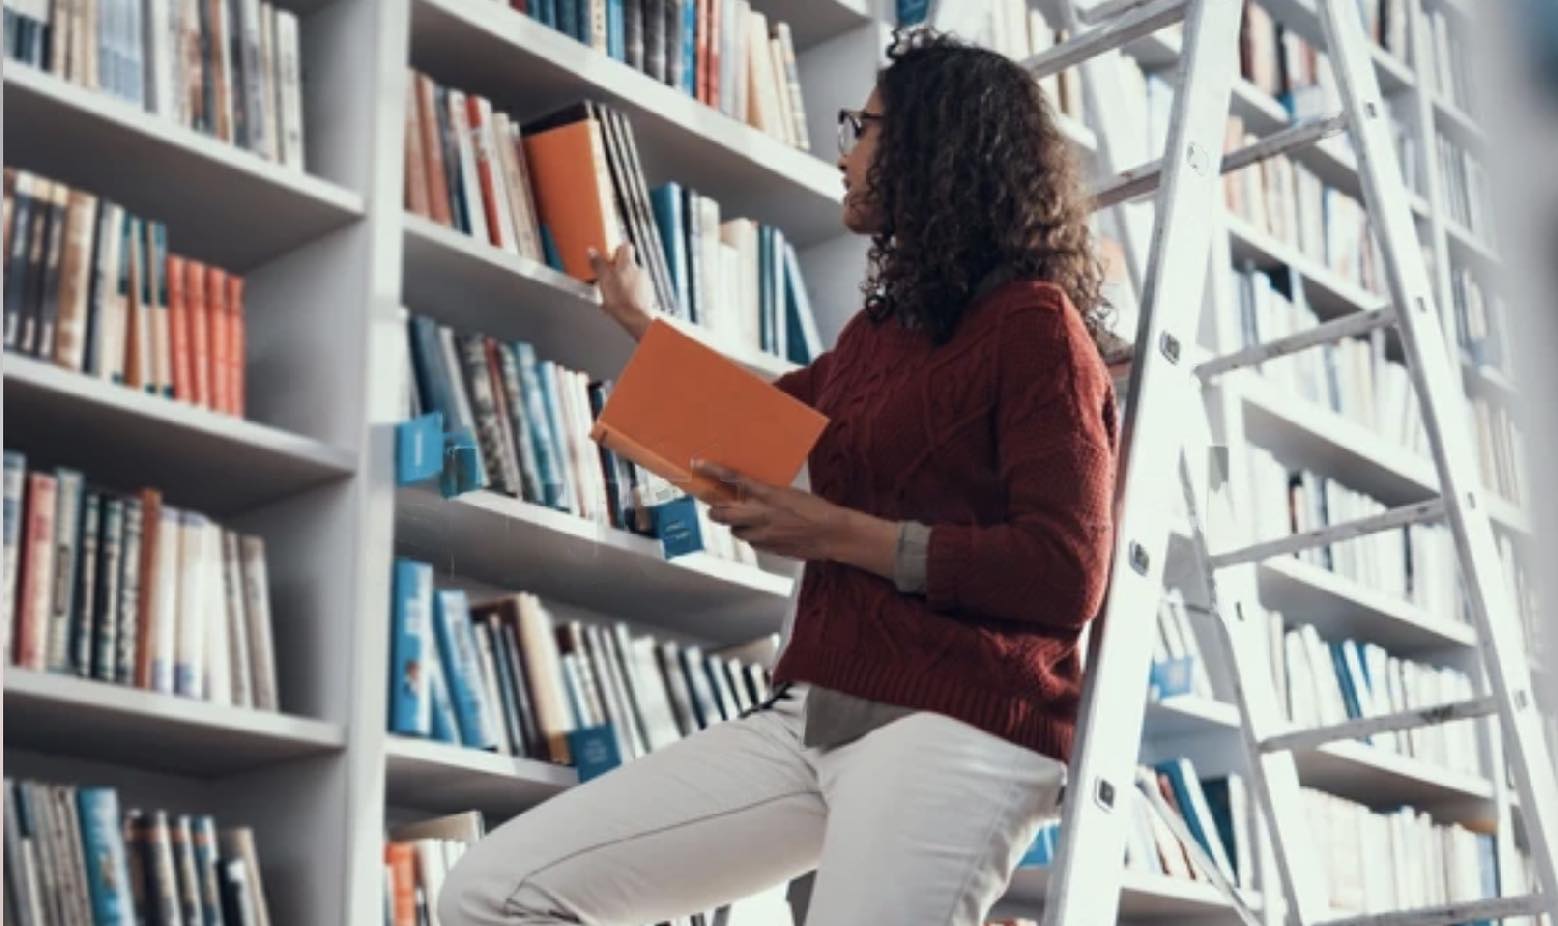 Натхнення для написання есе може подарувати і похід до книгарні чи бібліотеки, якщо ви побачите на полиці потрібне видання. Джерело фото: Shutterstock.